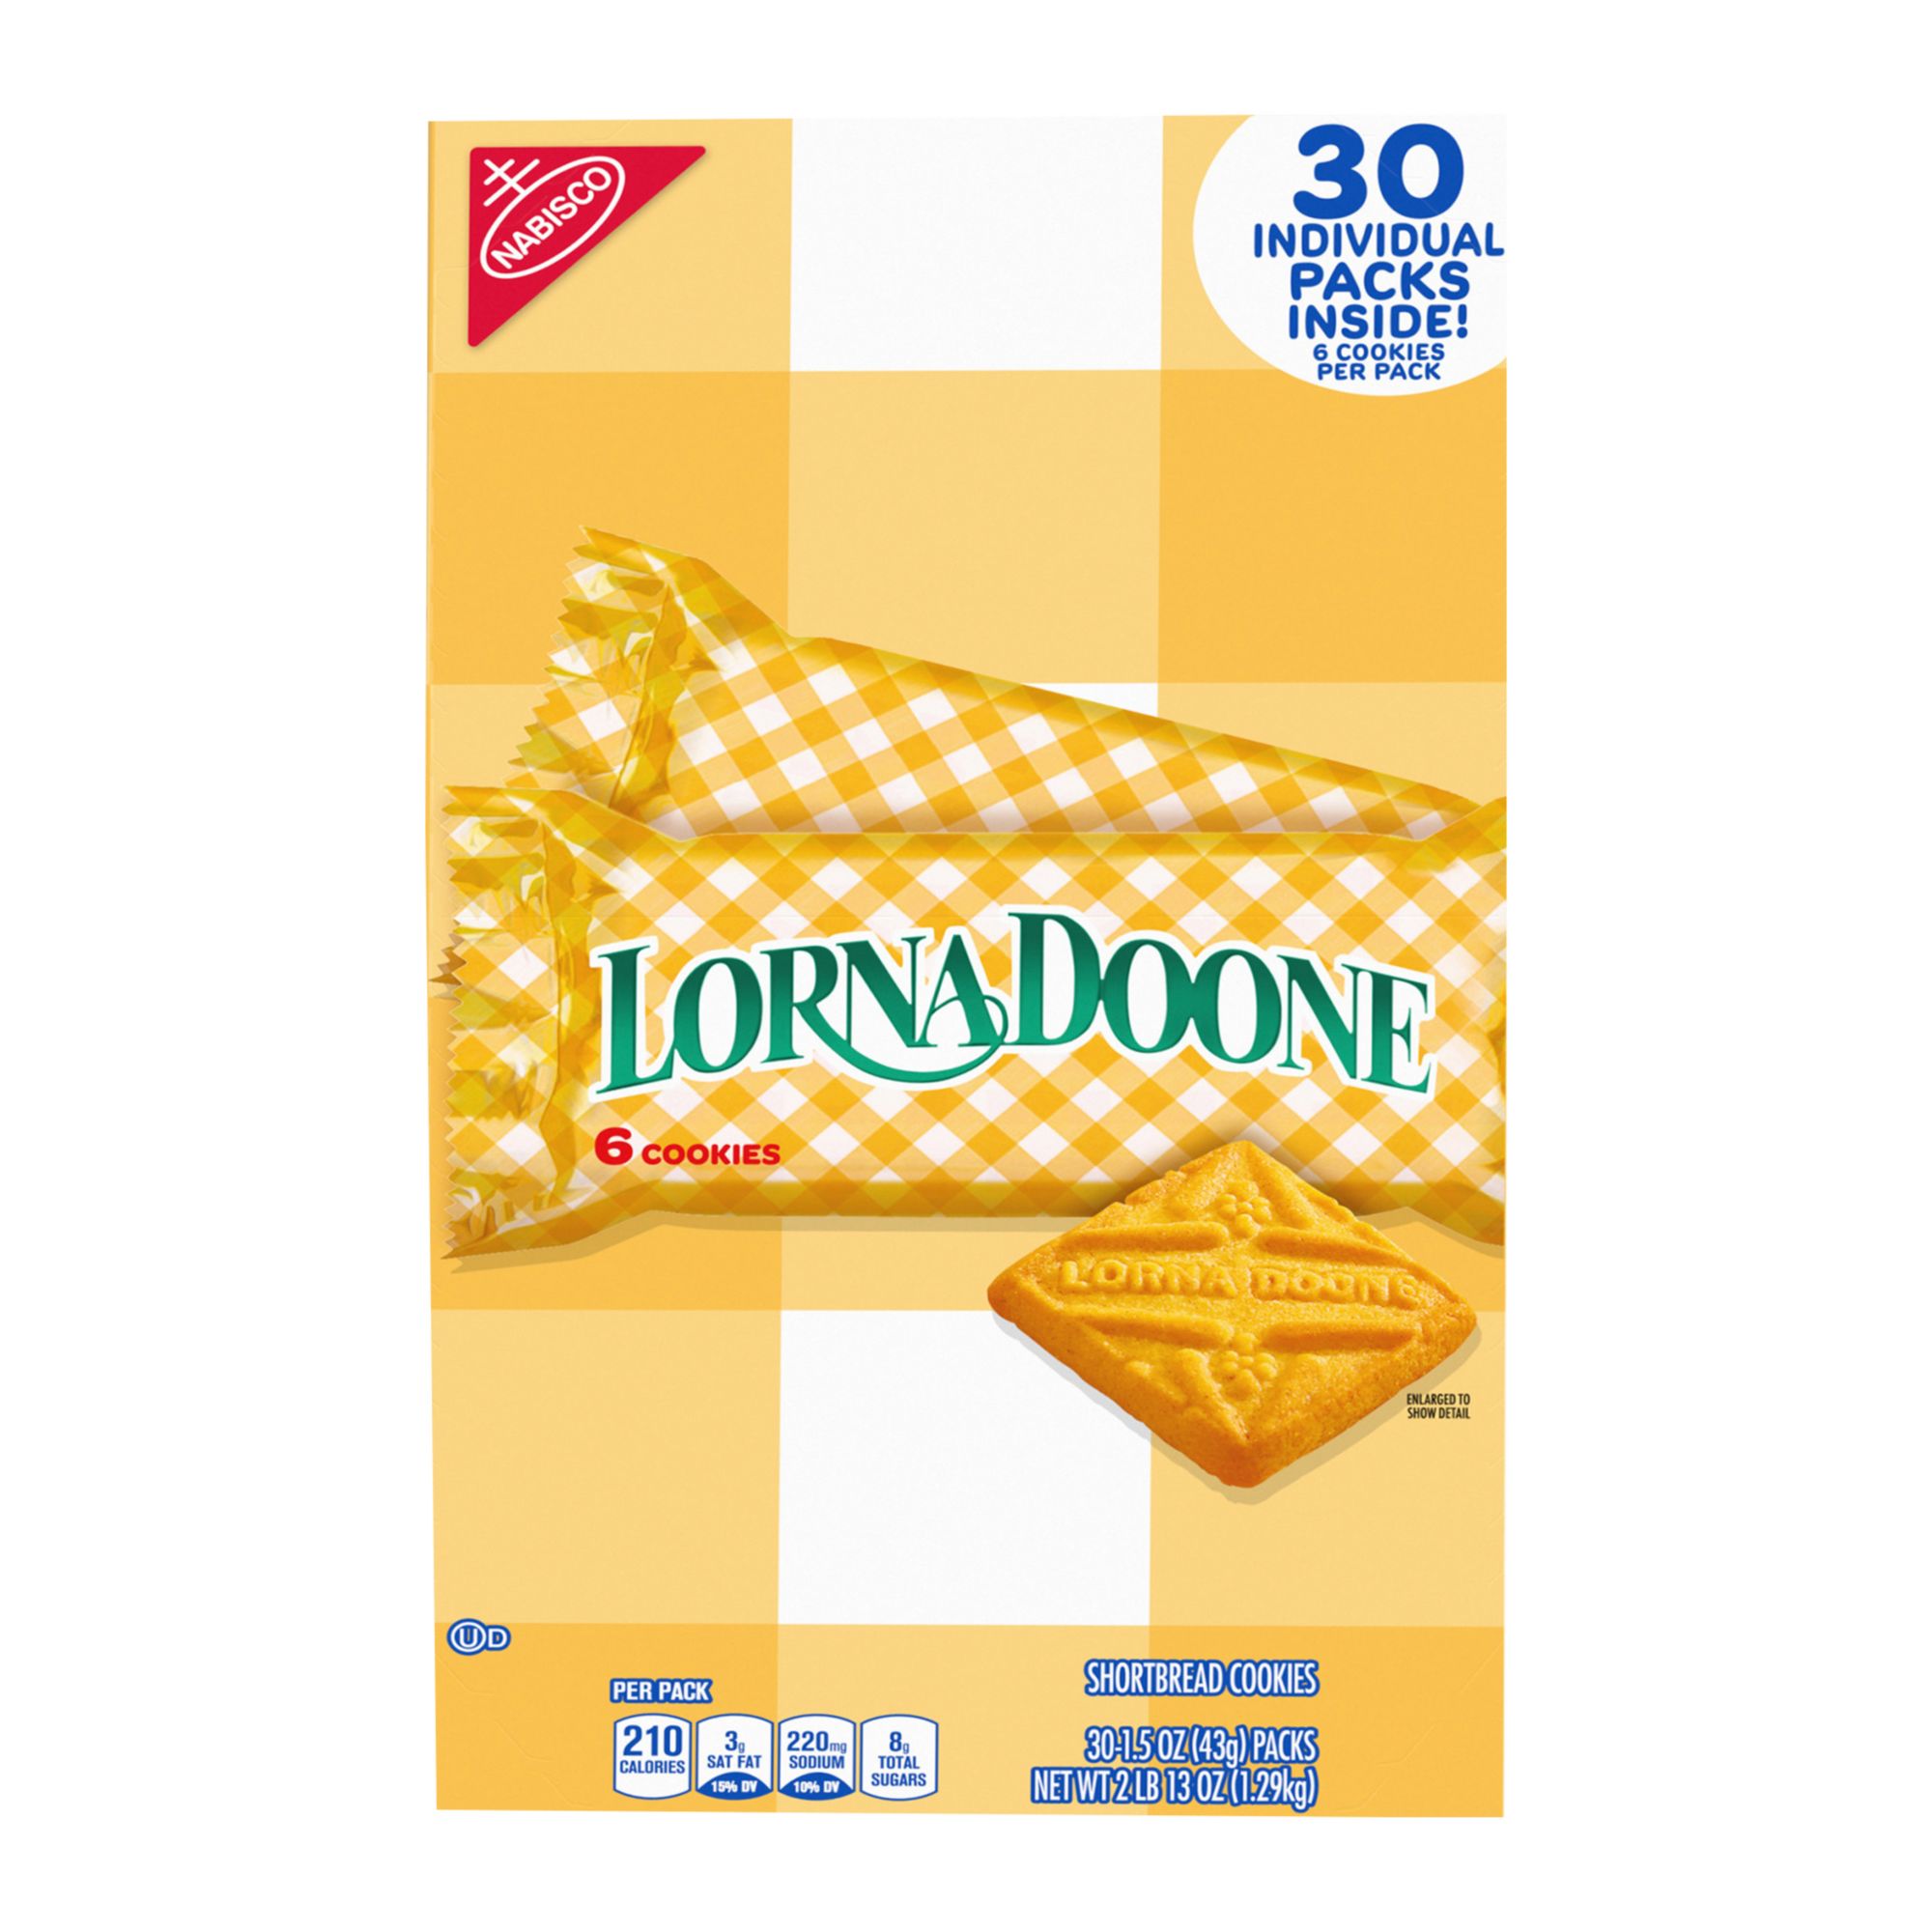 Lorna Doone Shortbread Cookies, 30 pk.